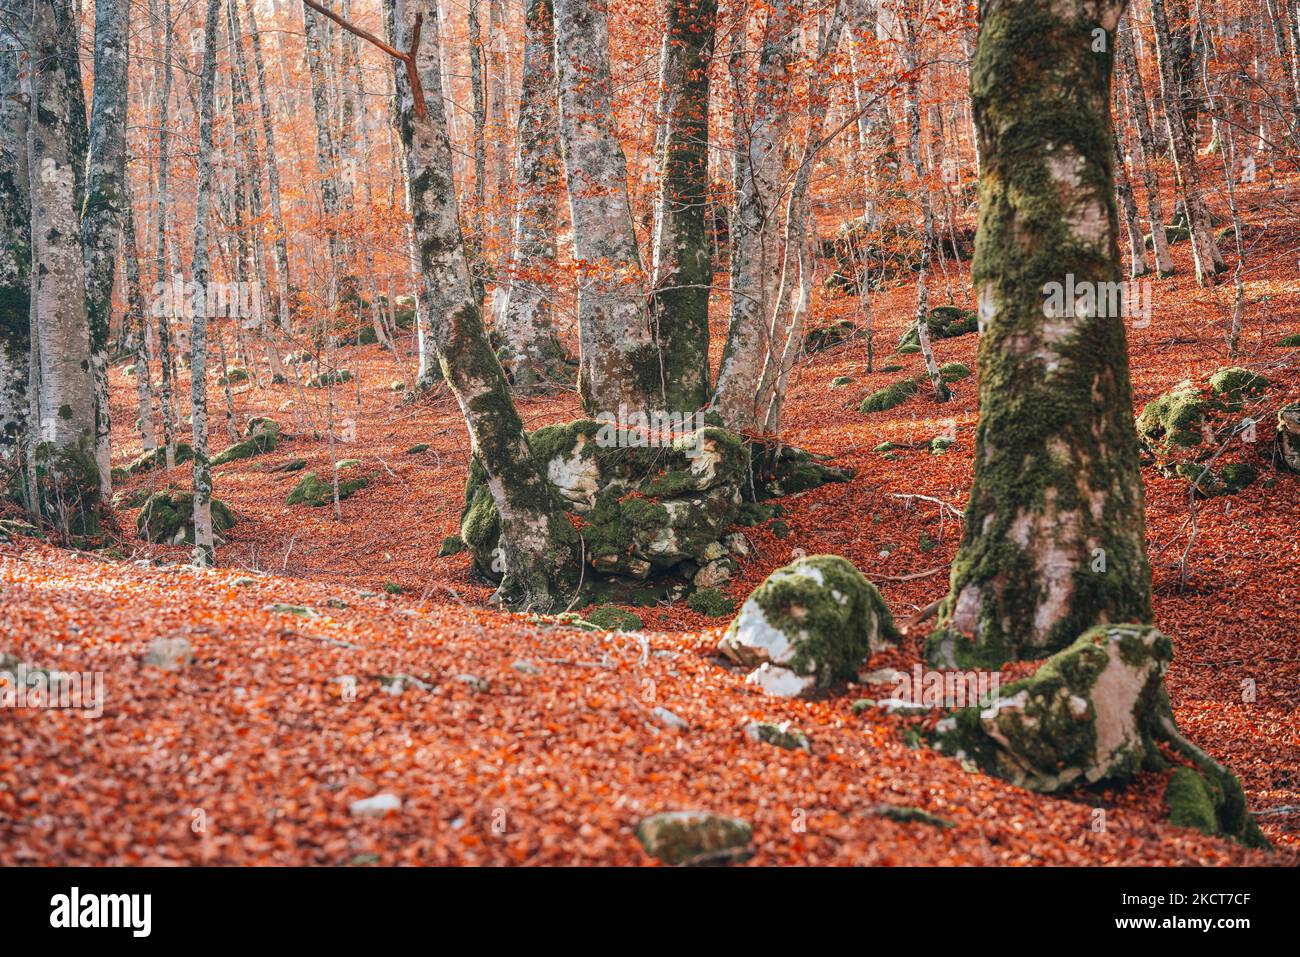 Foliage at Abruzzo National Park, Italy Stock Photo